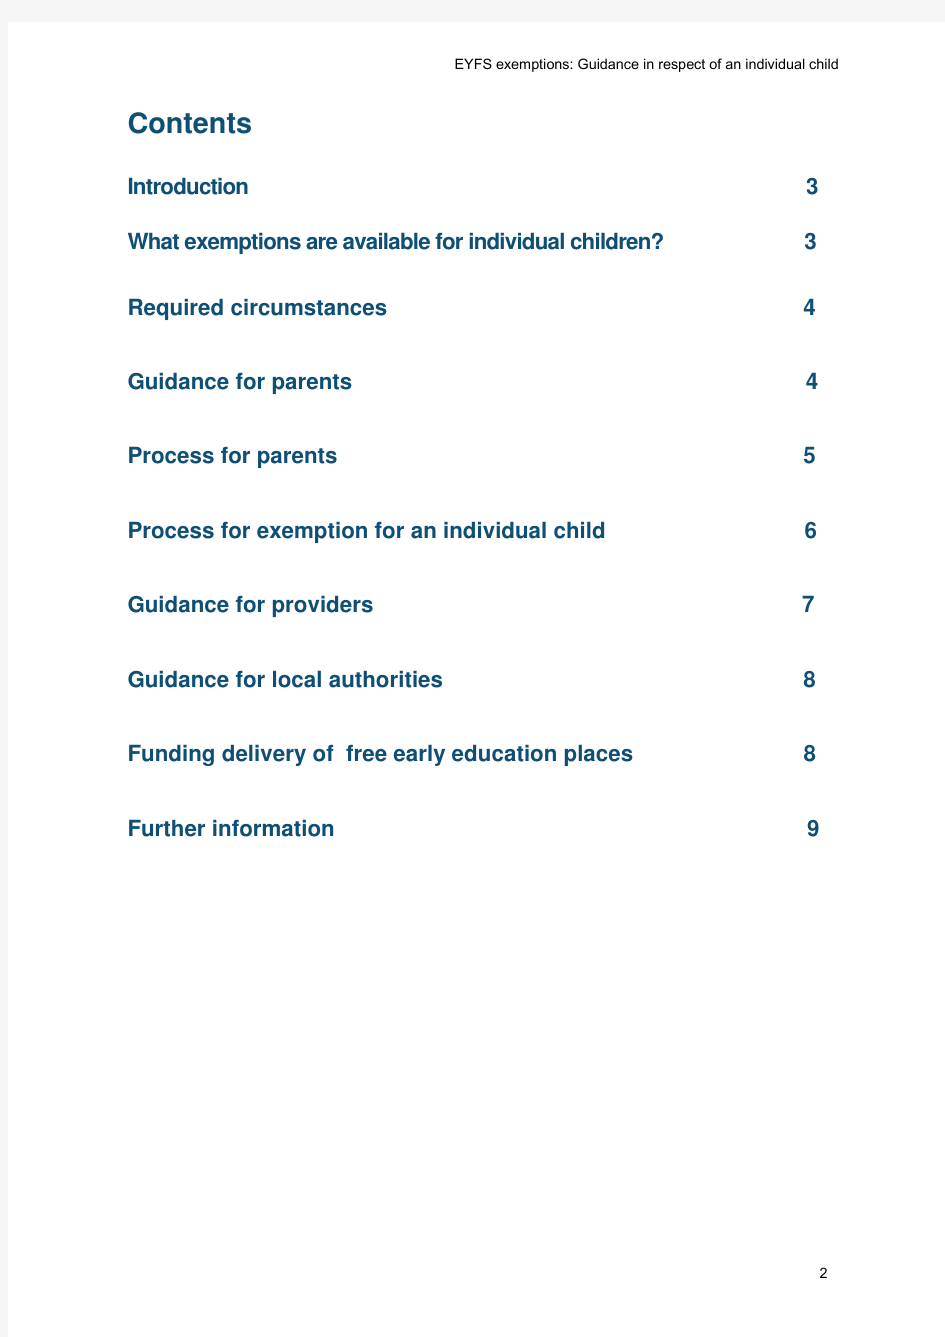 英国早期教育报告 eyfs guidance on exemptions in respect if individual children final 011012